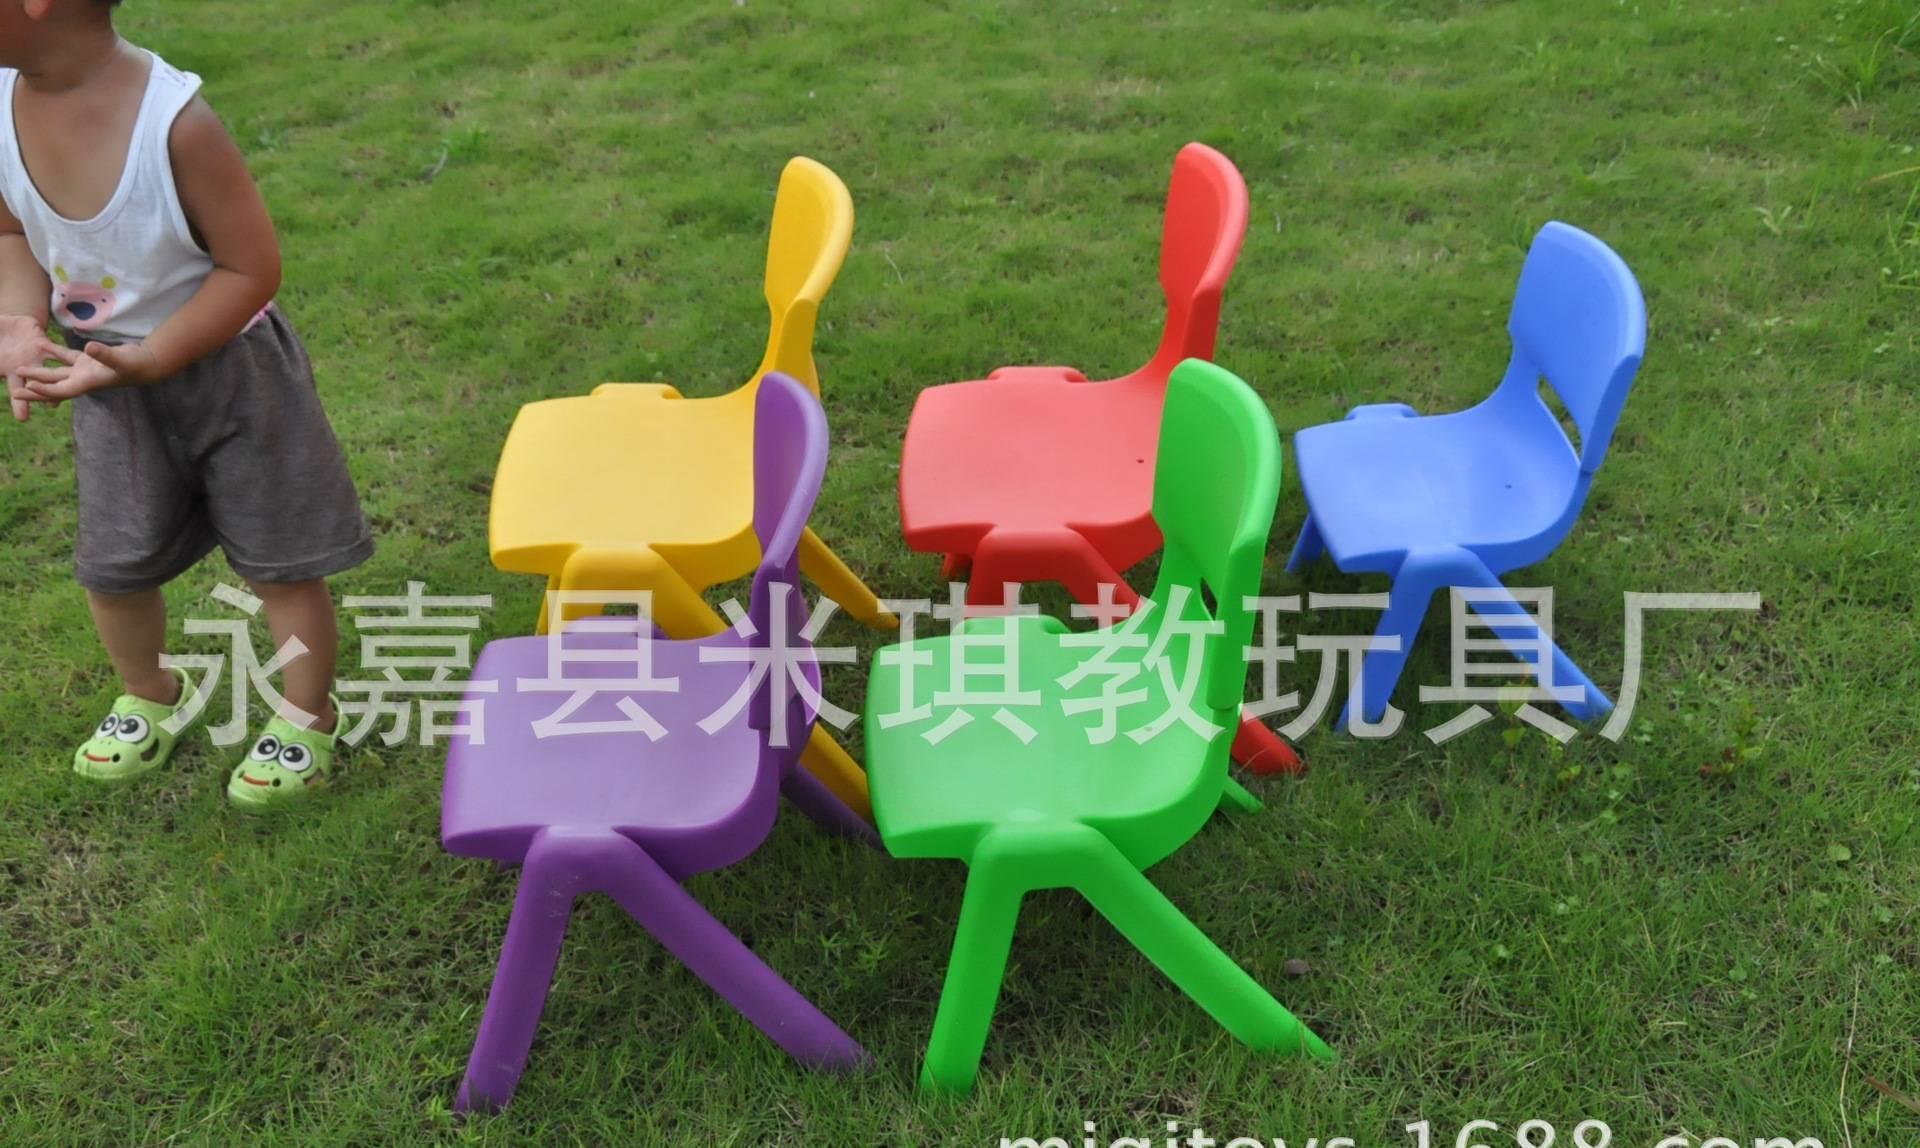 厂家直销园豪华塑料椅子 靠背椅 进口PE料 学生椅 成人椅批发示例图5